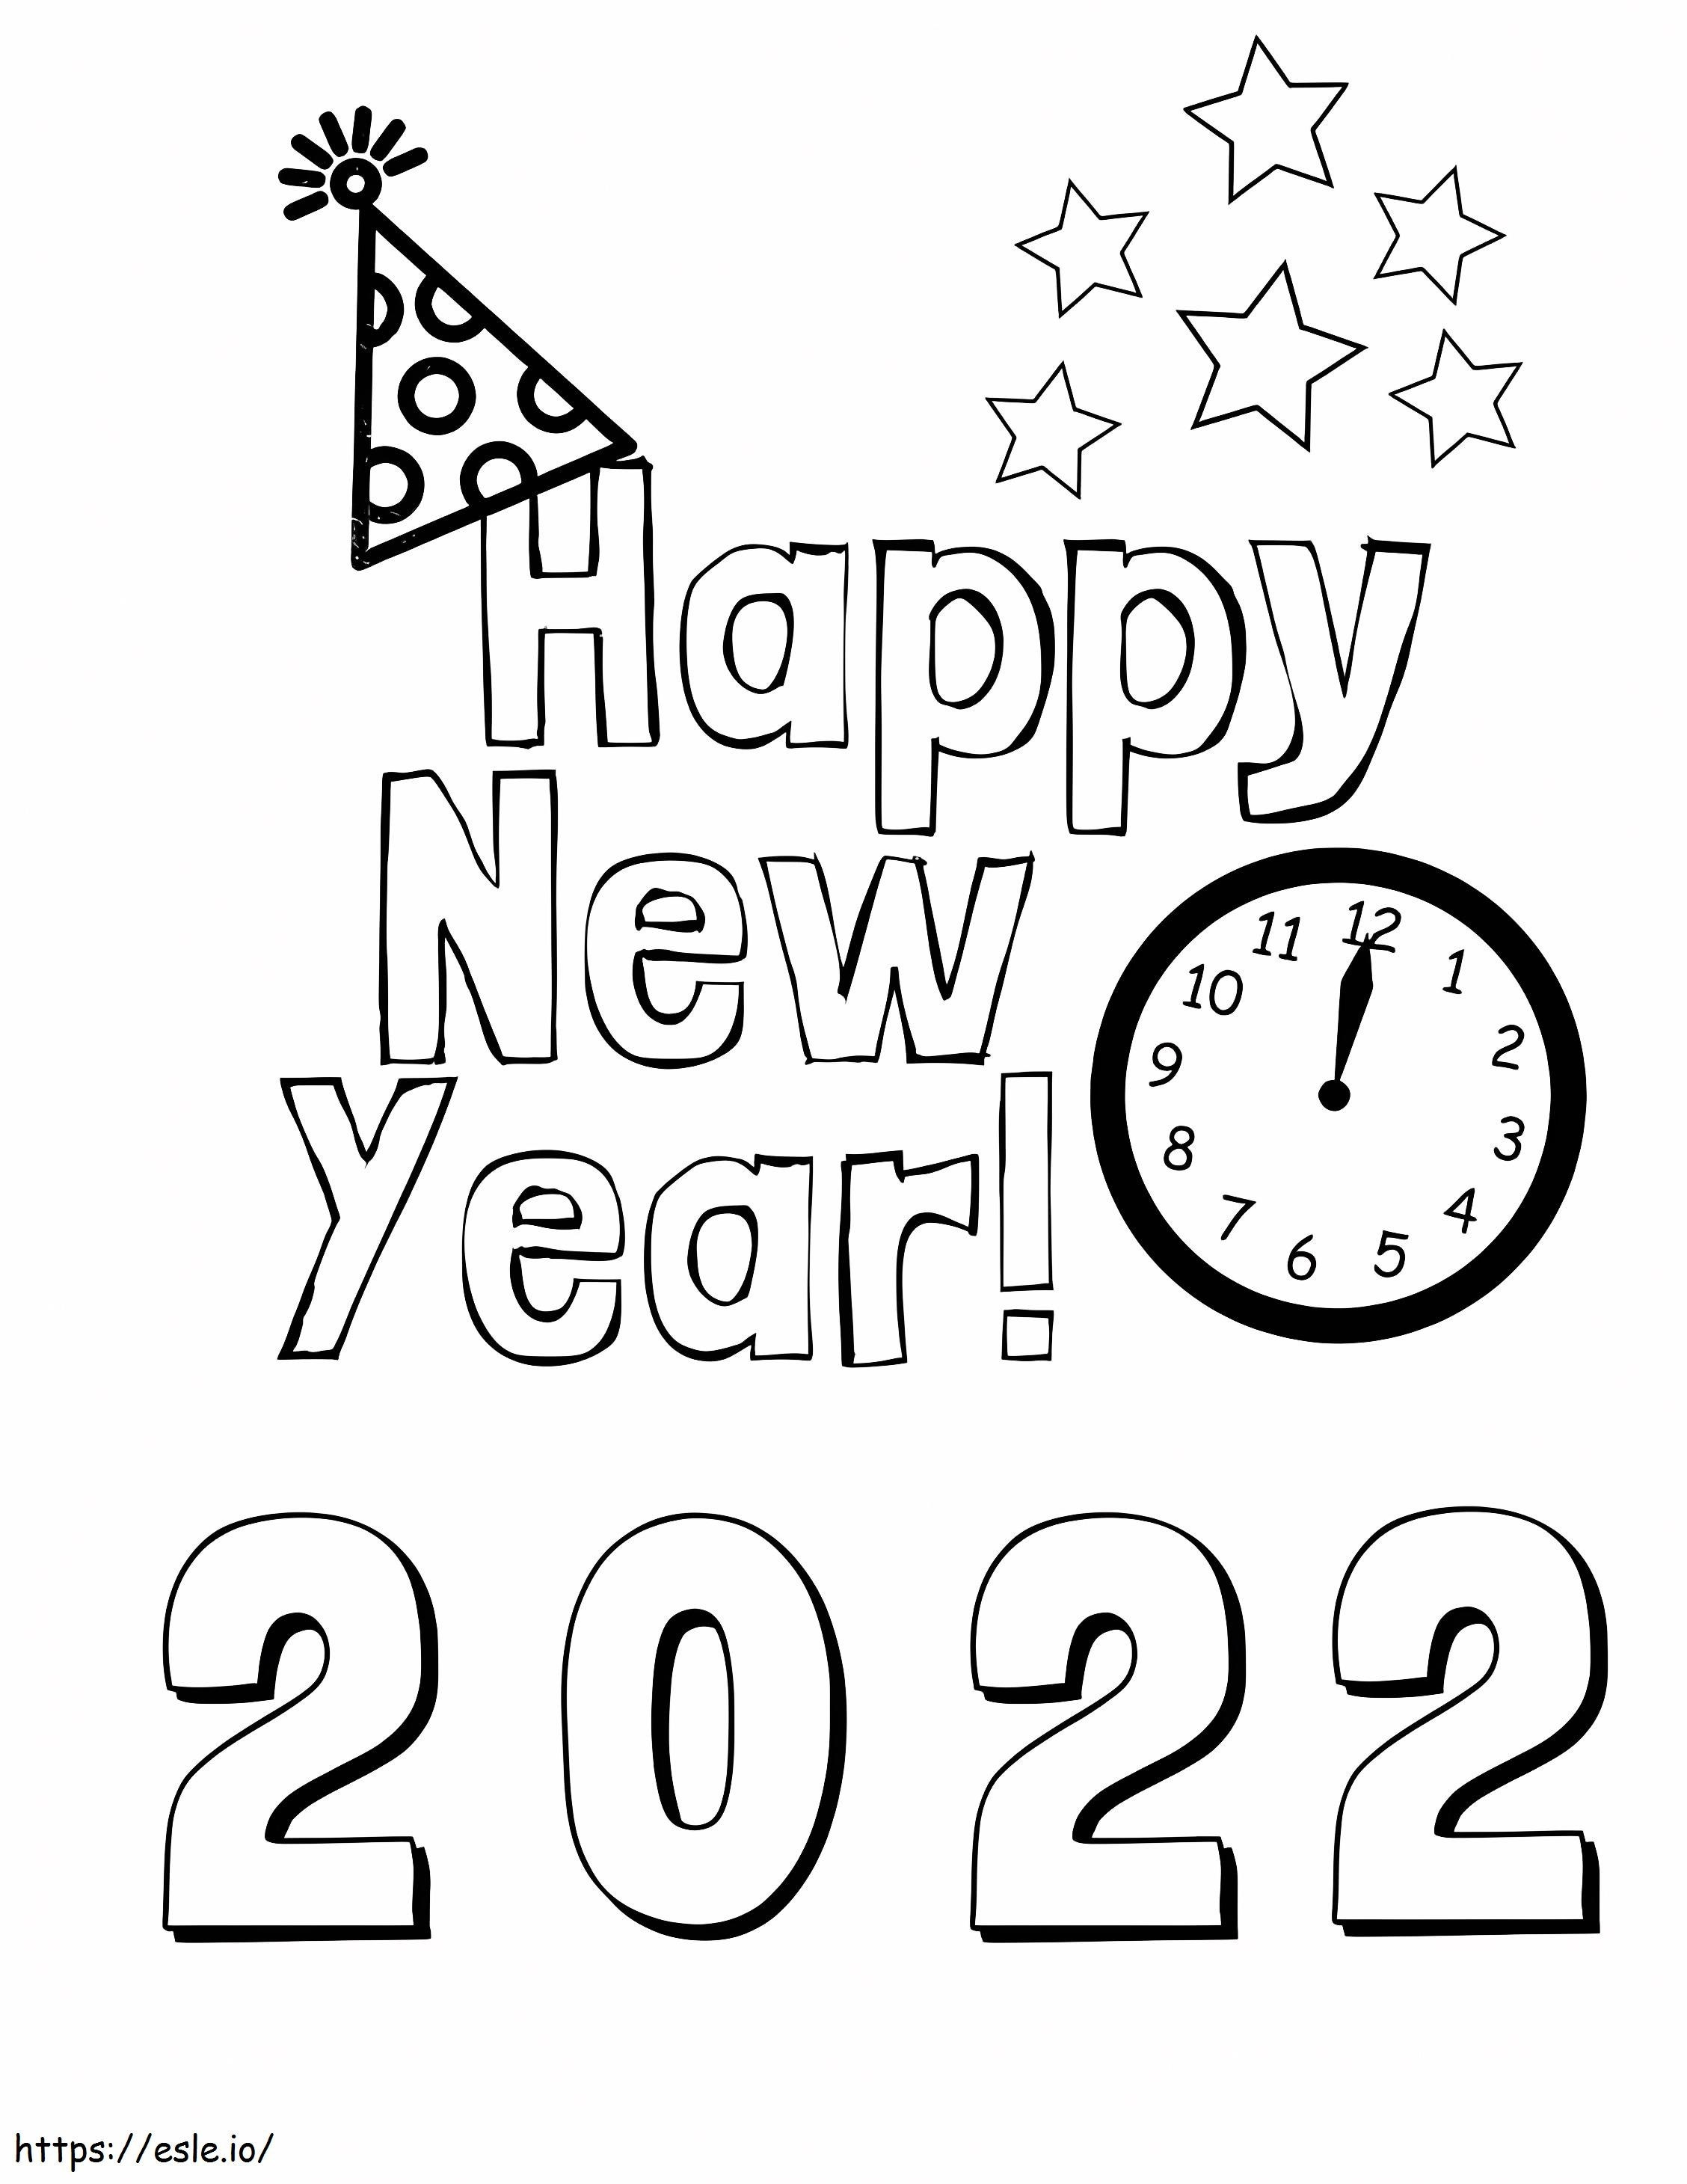 2022 Yeni Yıl 1 boyama